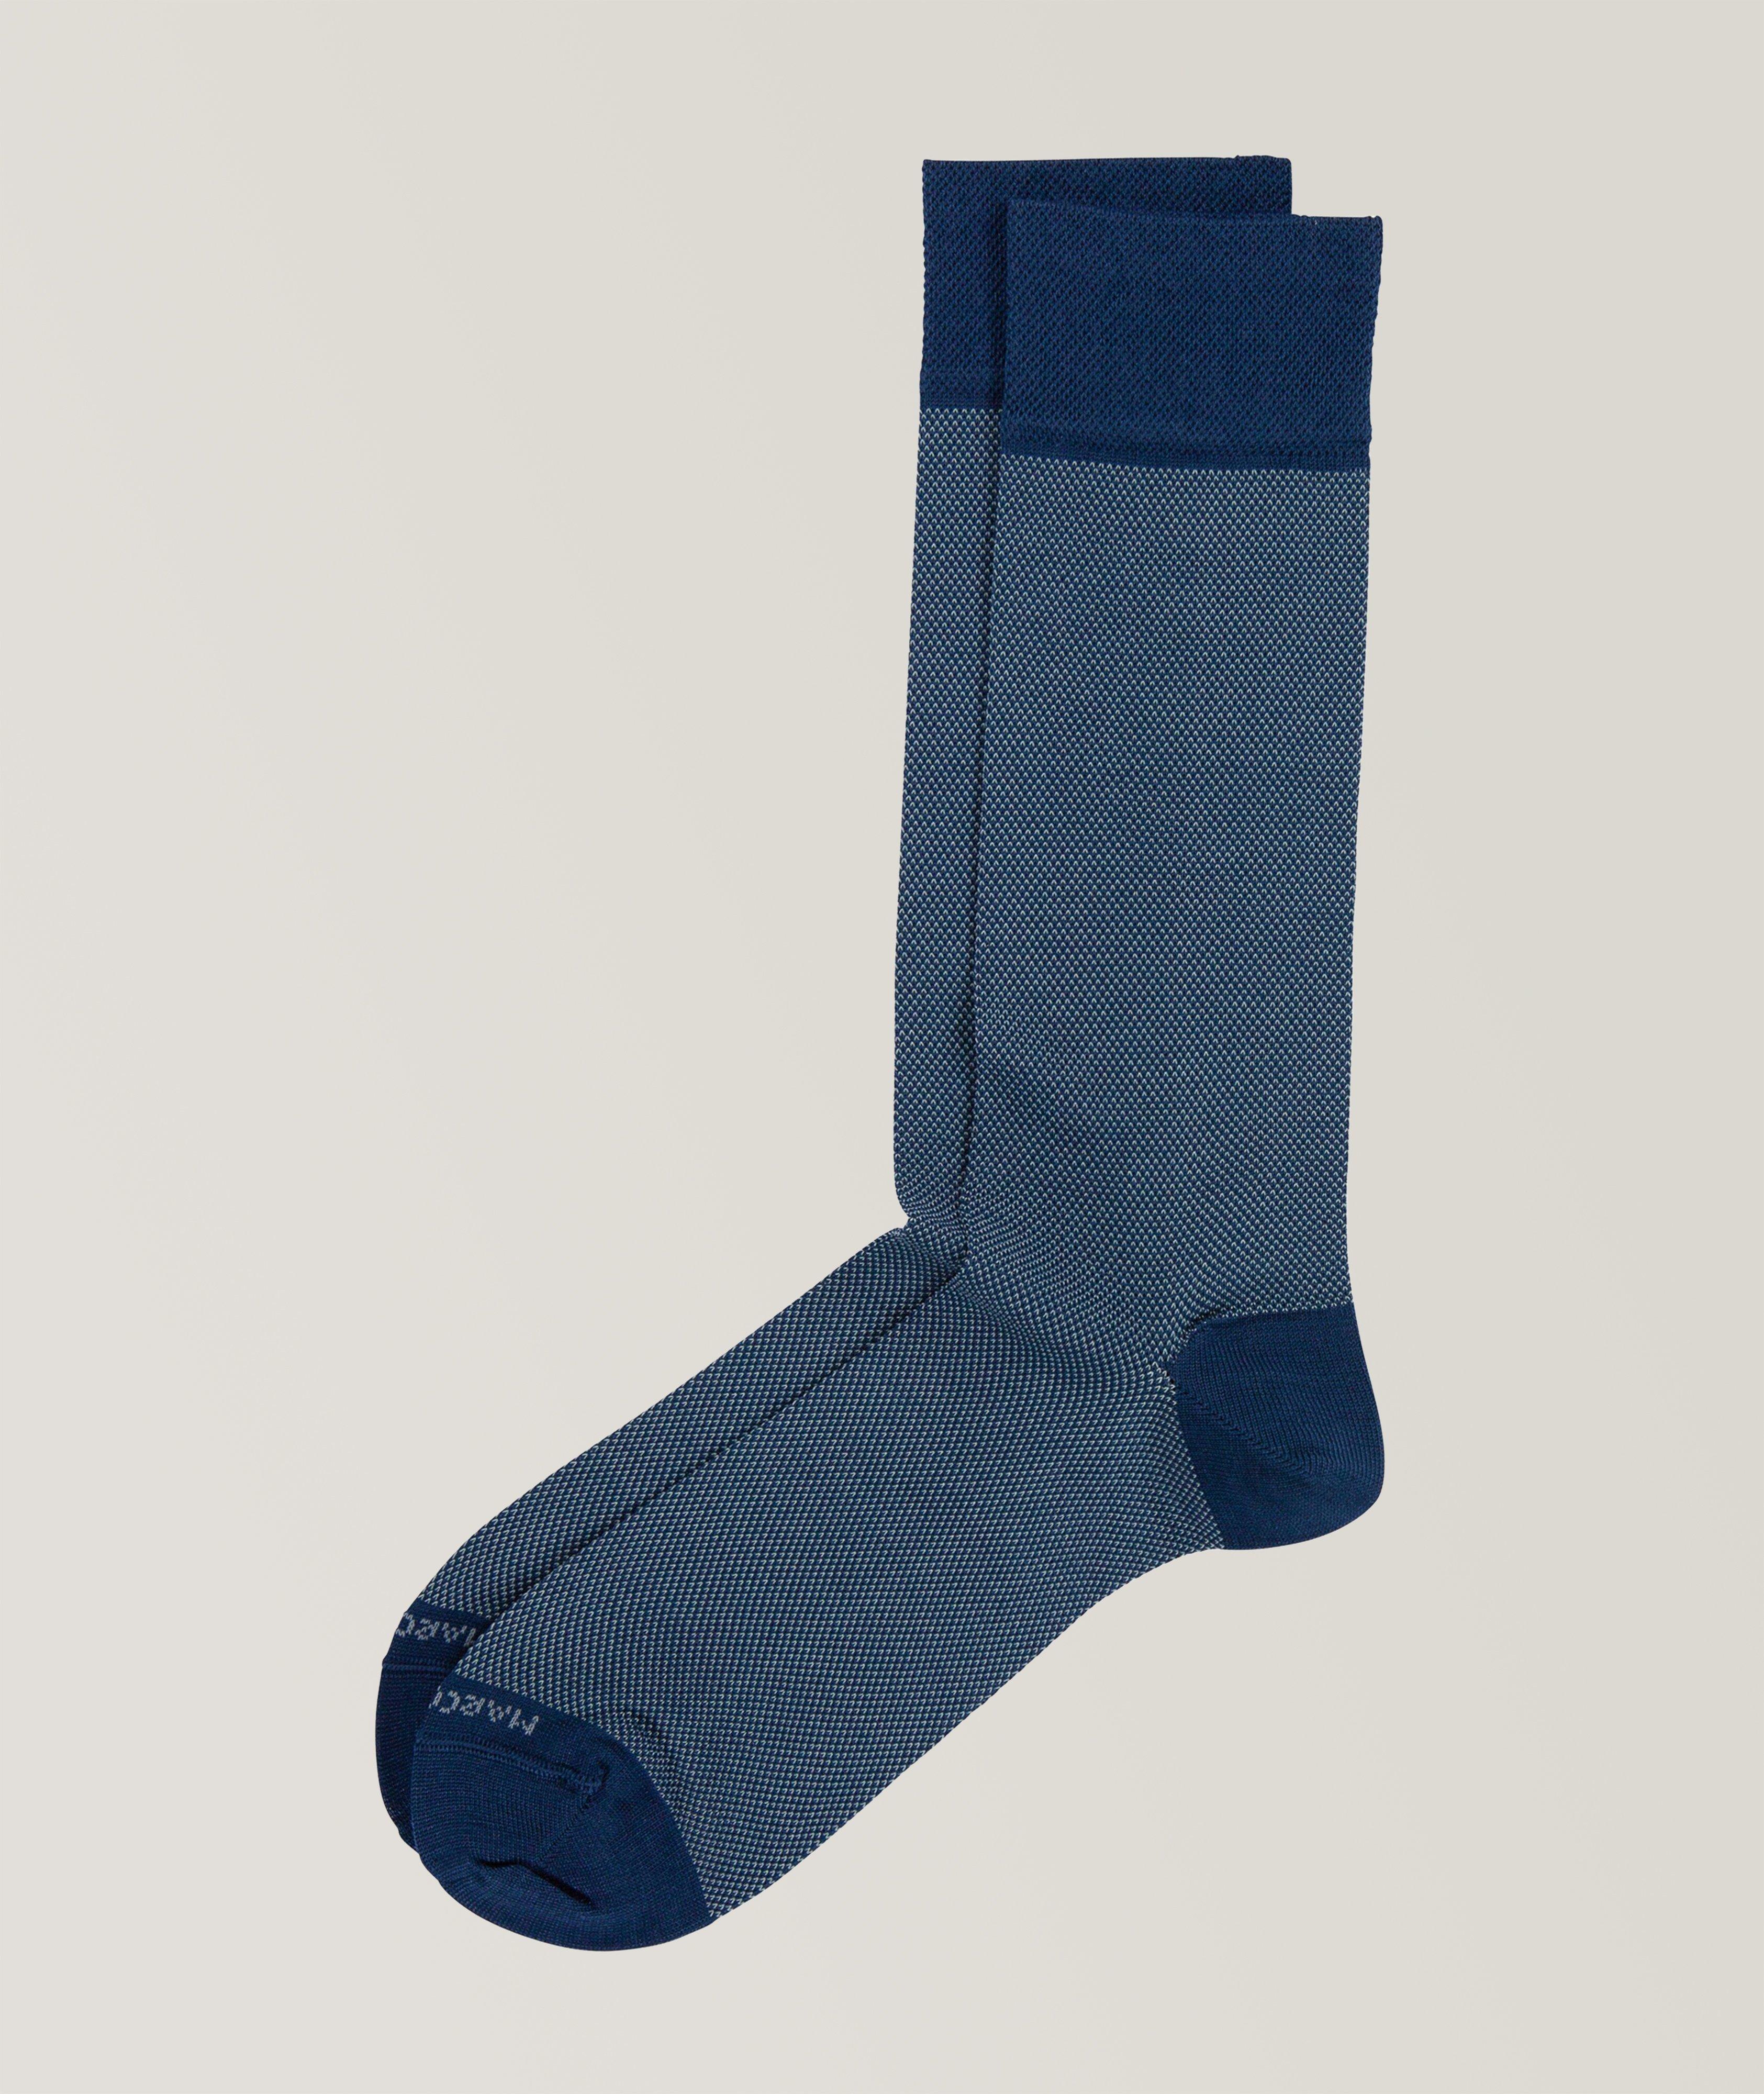 Cotton-Blend Socks image 0